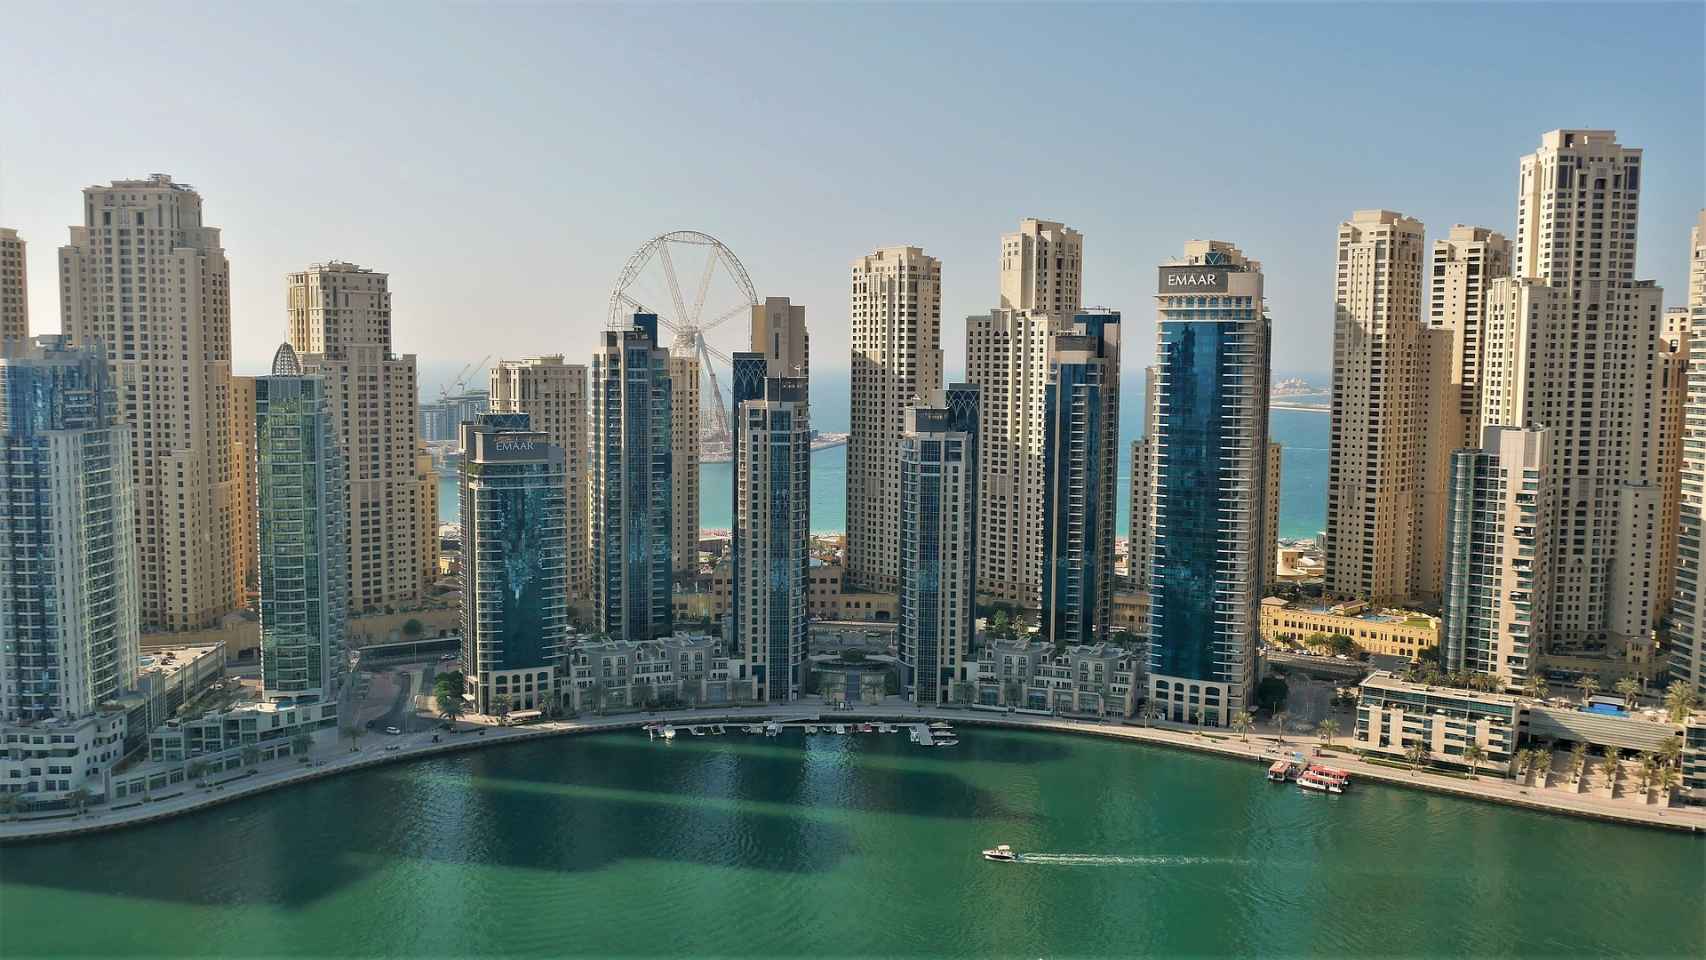 Perfil de rascacielos en Dubái, la ciudad más poblada de Emiratos Árabes Unidos.